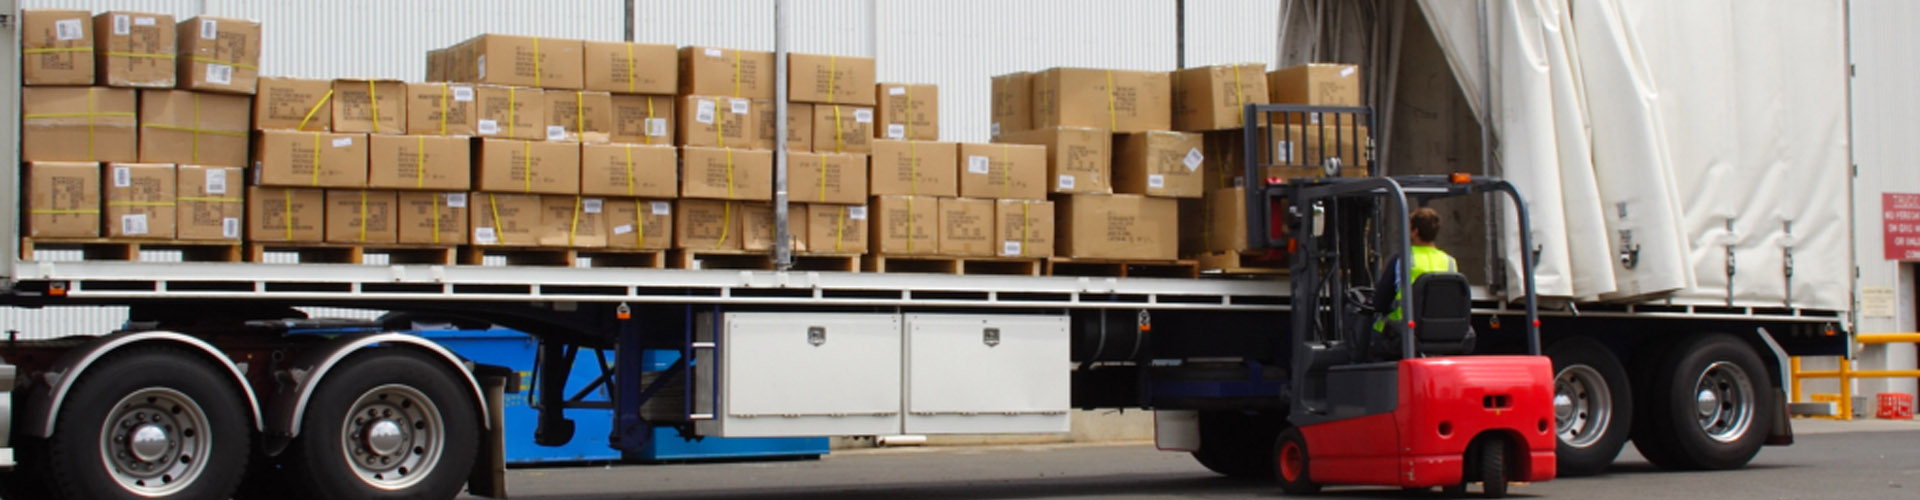 logistics load optimisation pallet loading software